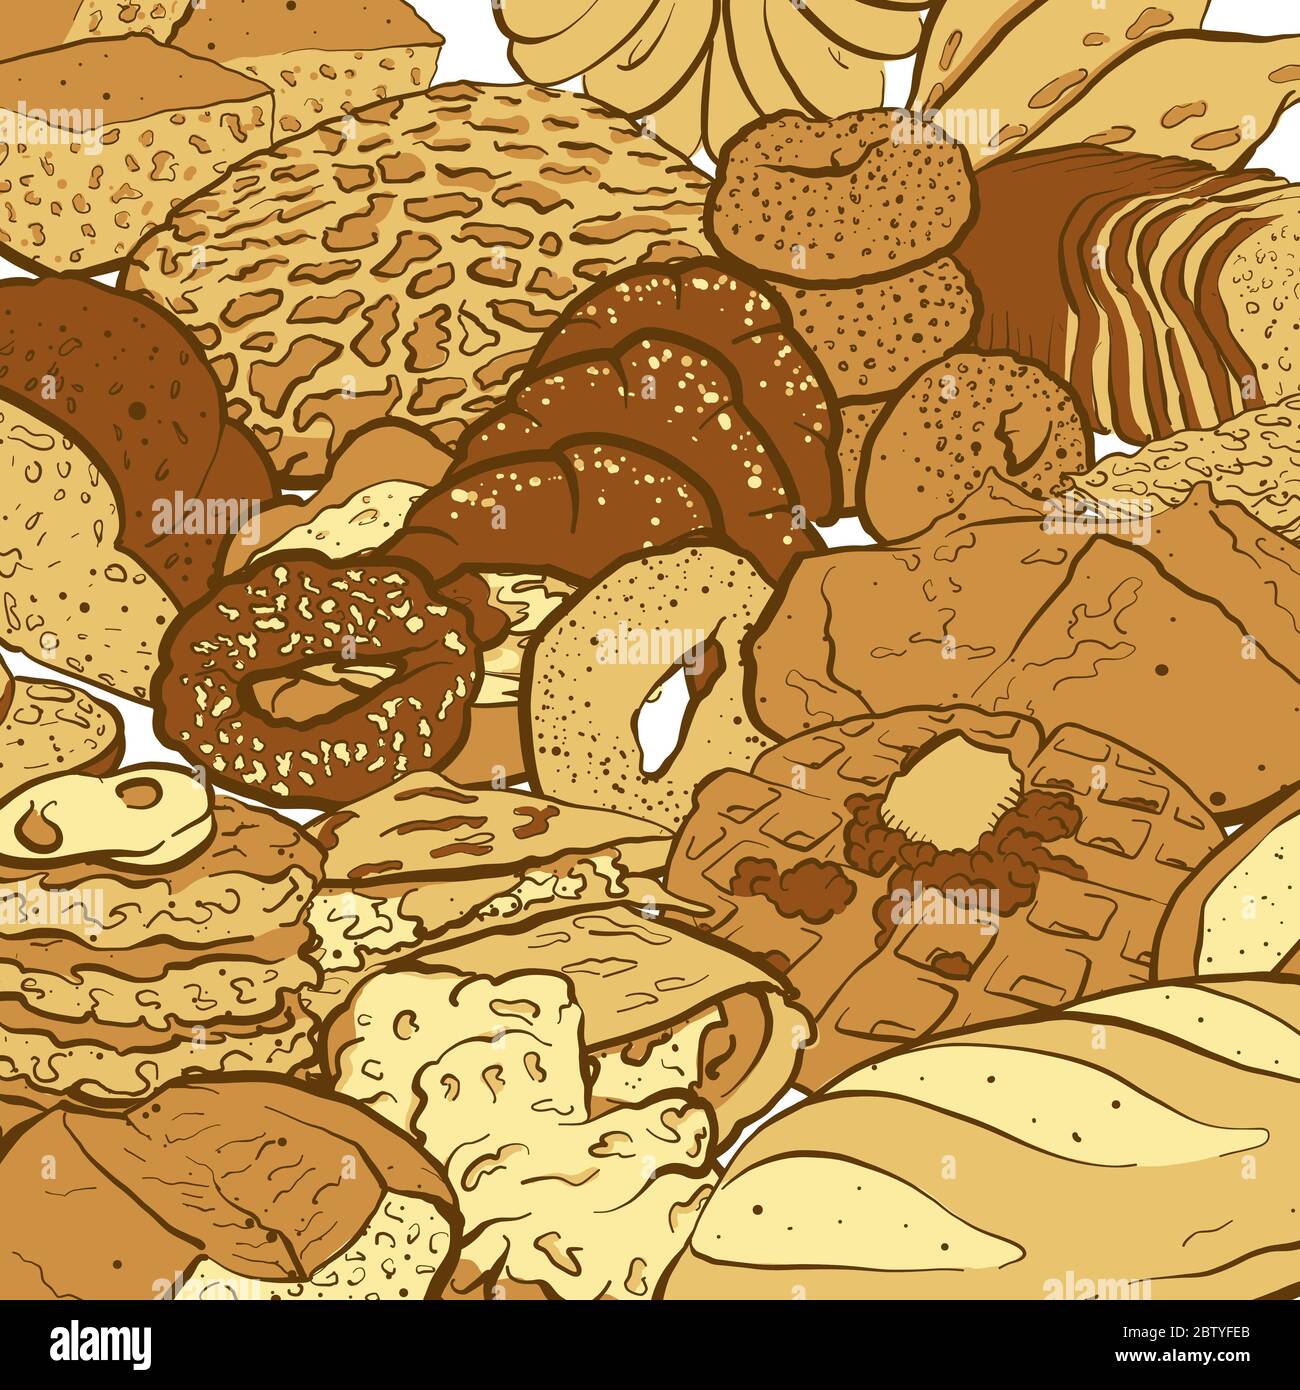 Esquisse vectorielle colorée très détaillée d'une composition avec différents types de pain. Esquisse de remplissage de zone dessinée à la main sur fond blanc. Illustration de Vecteur